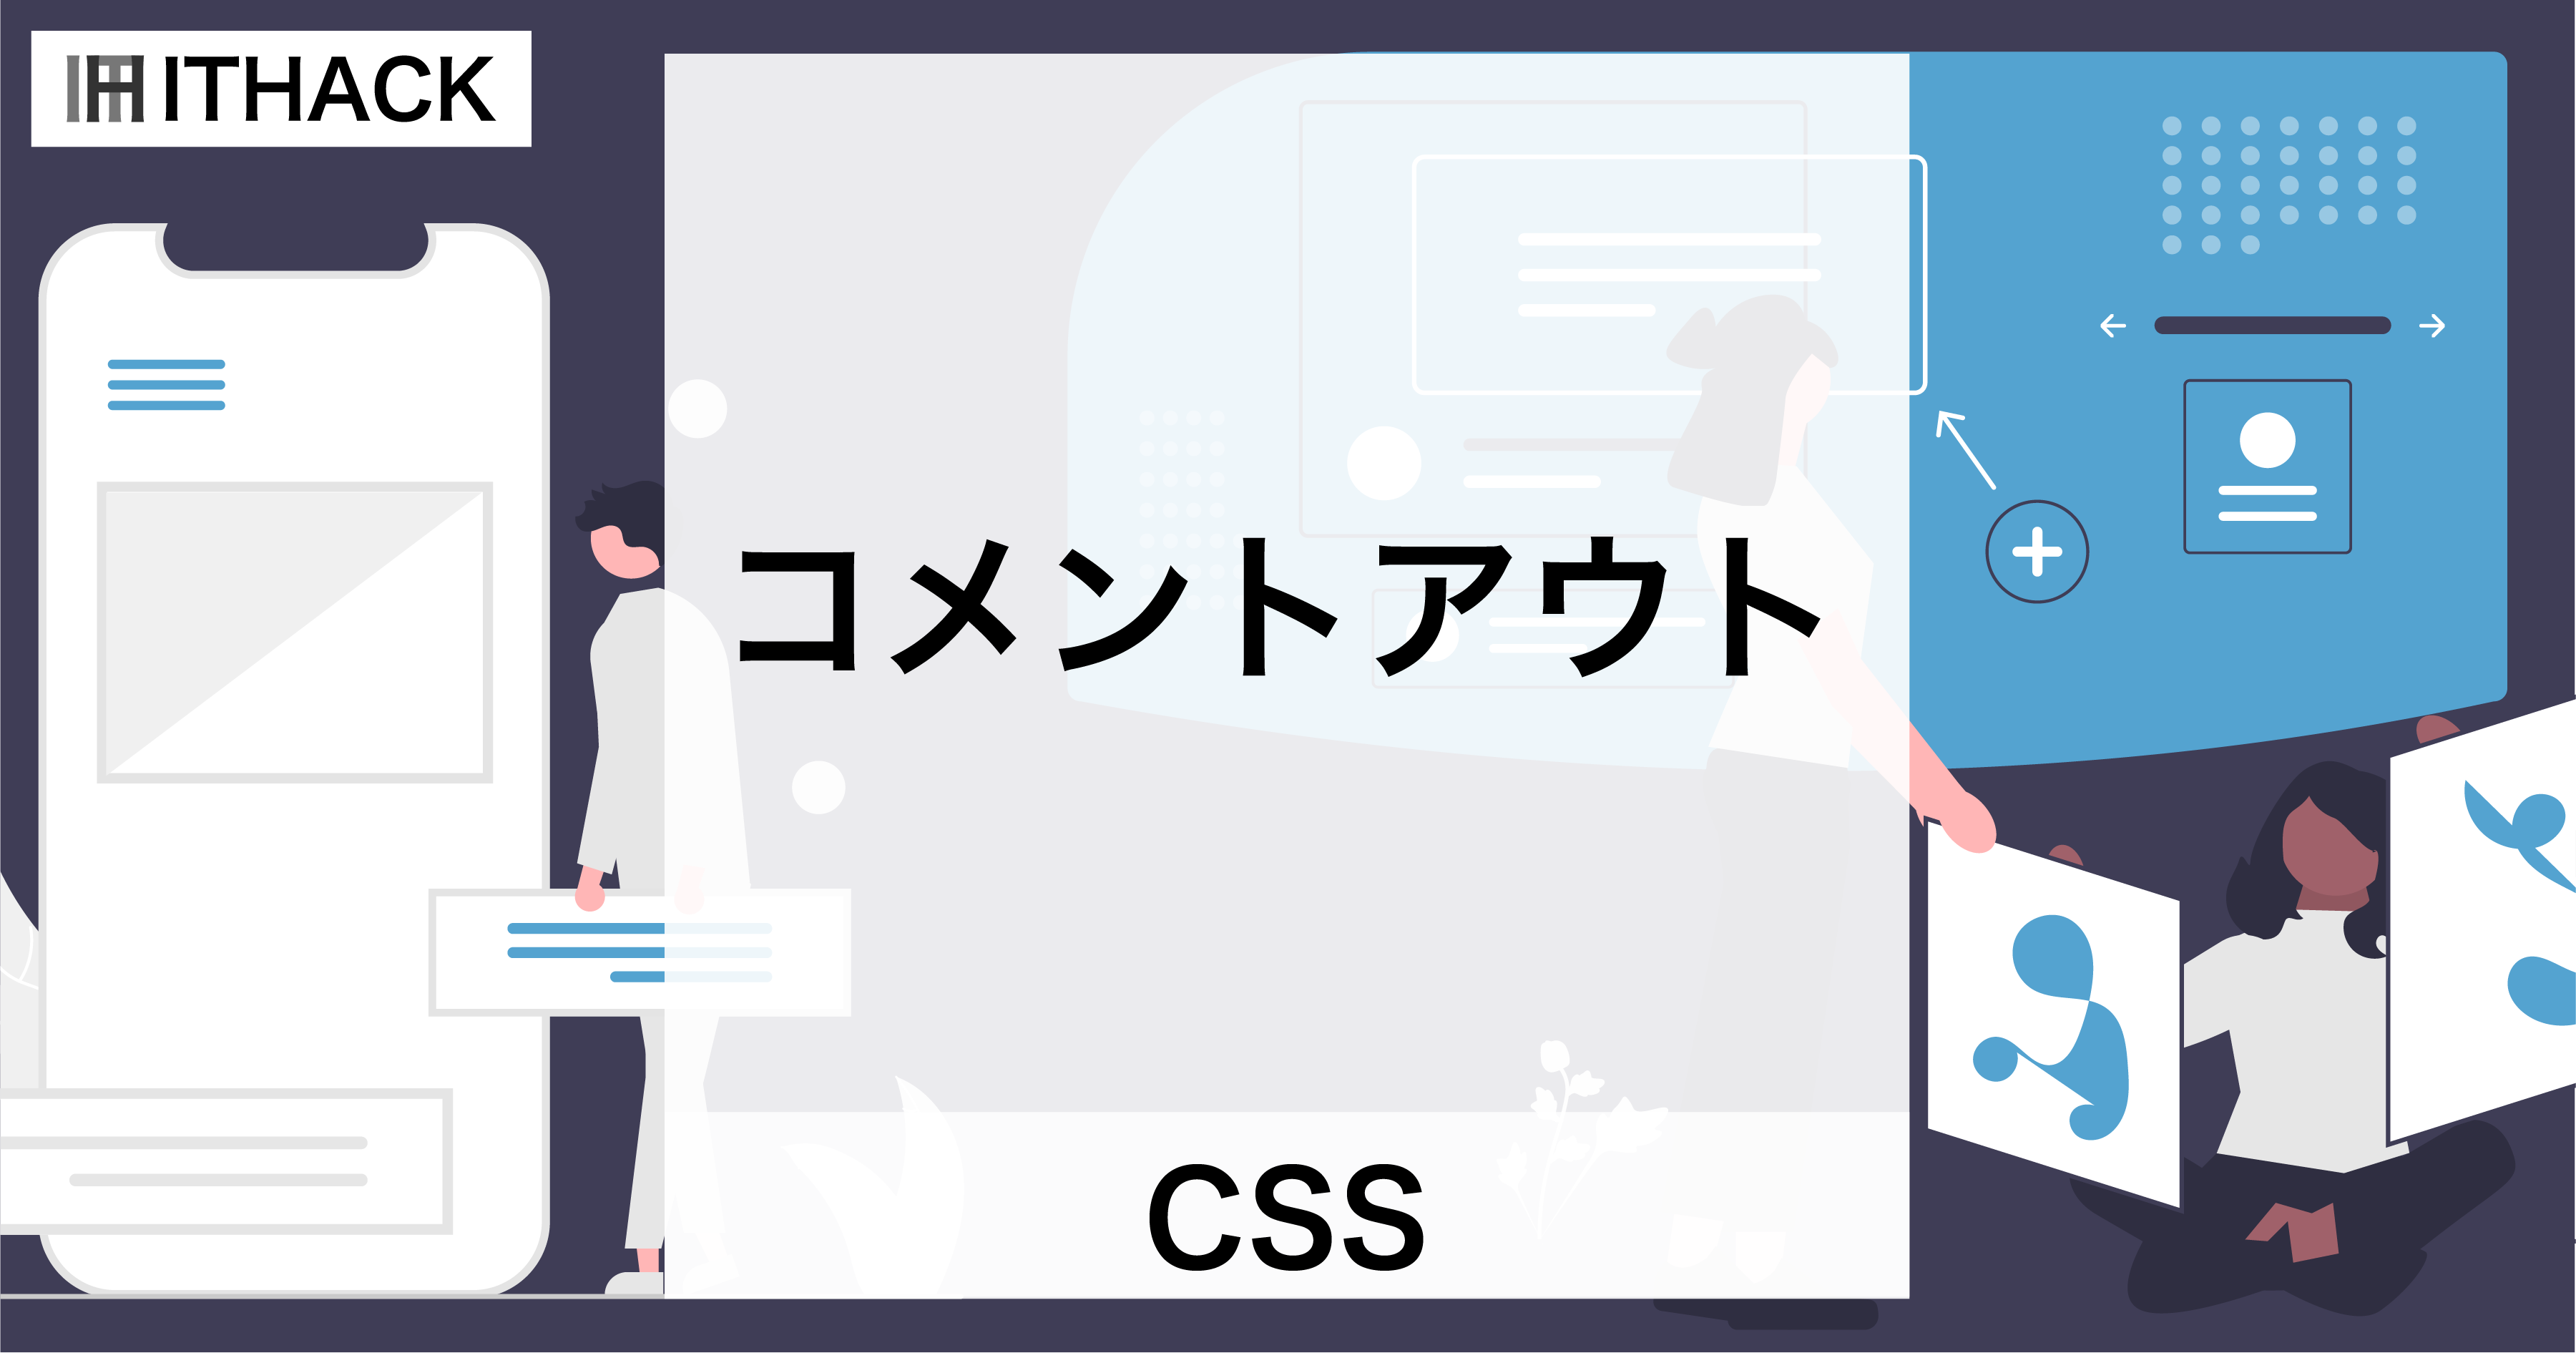 【CSS】コメントアウト - ソースコードの説明やメモ